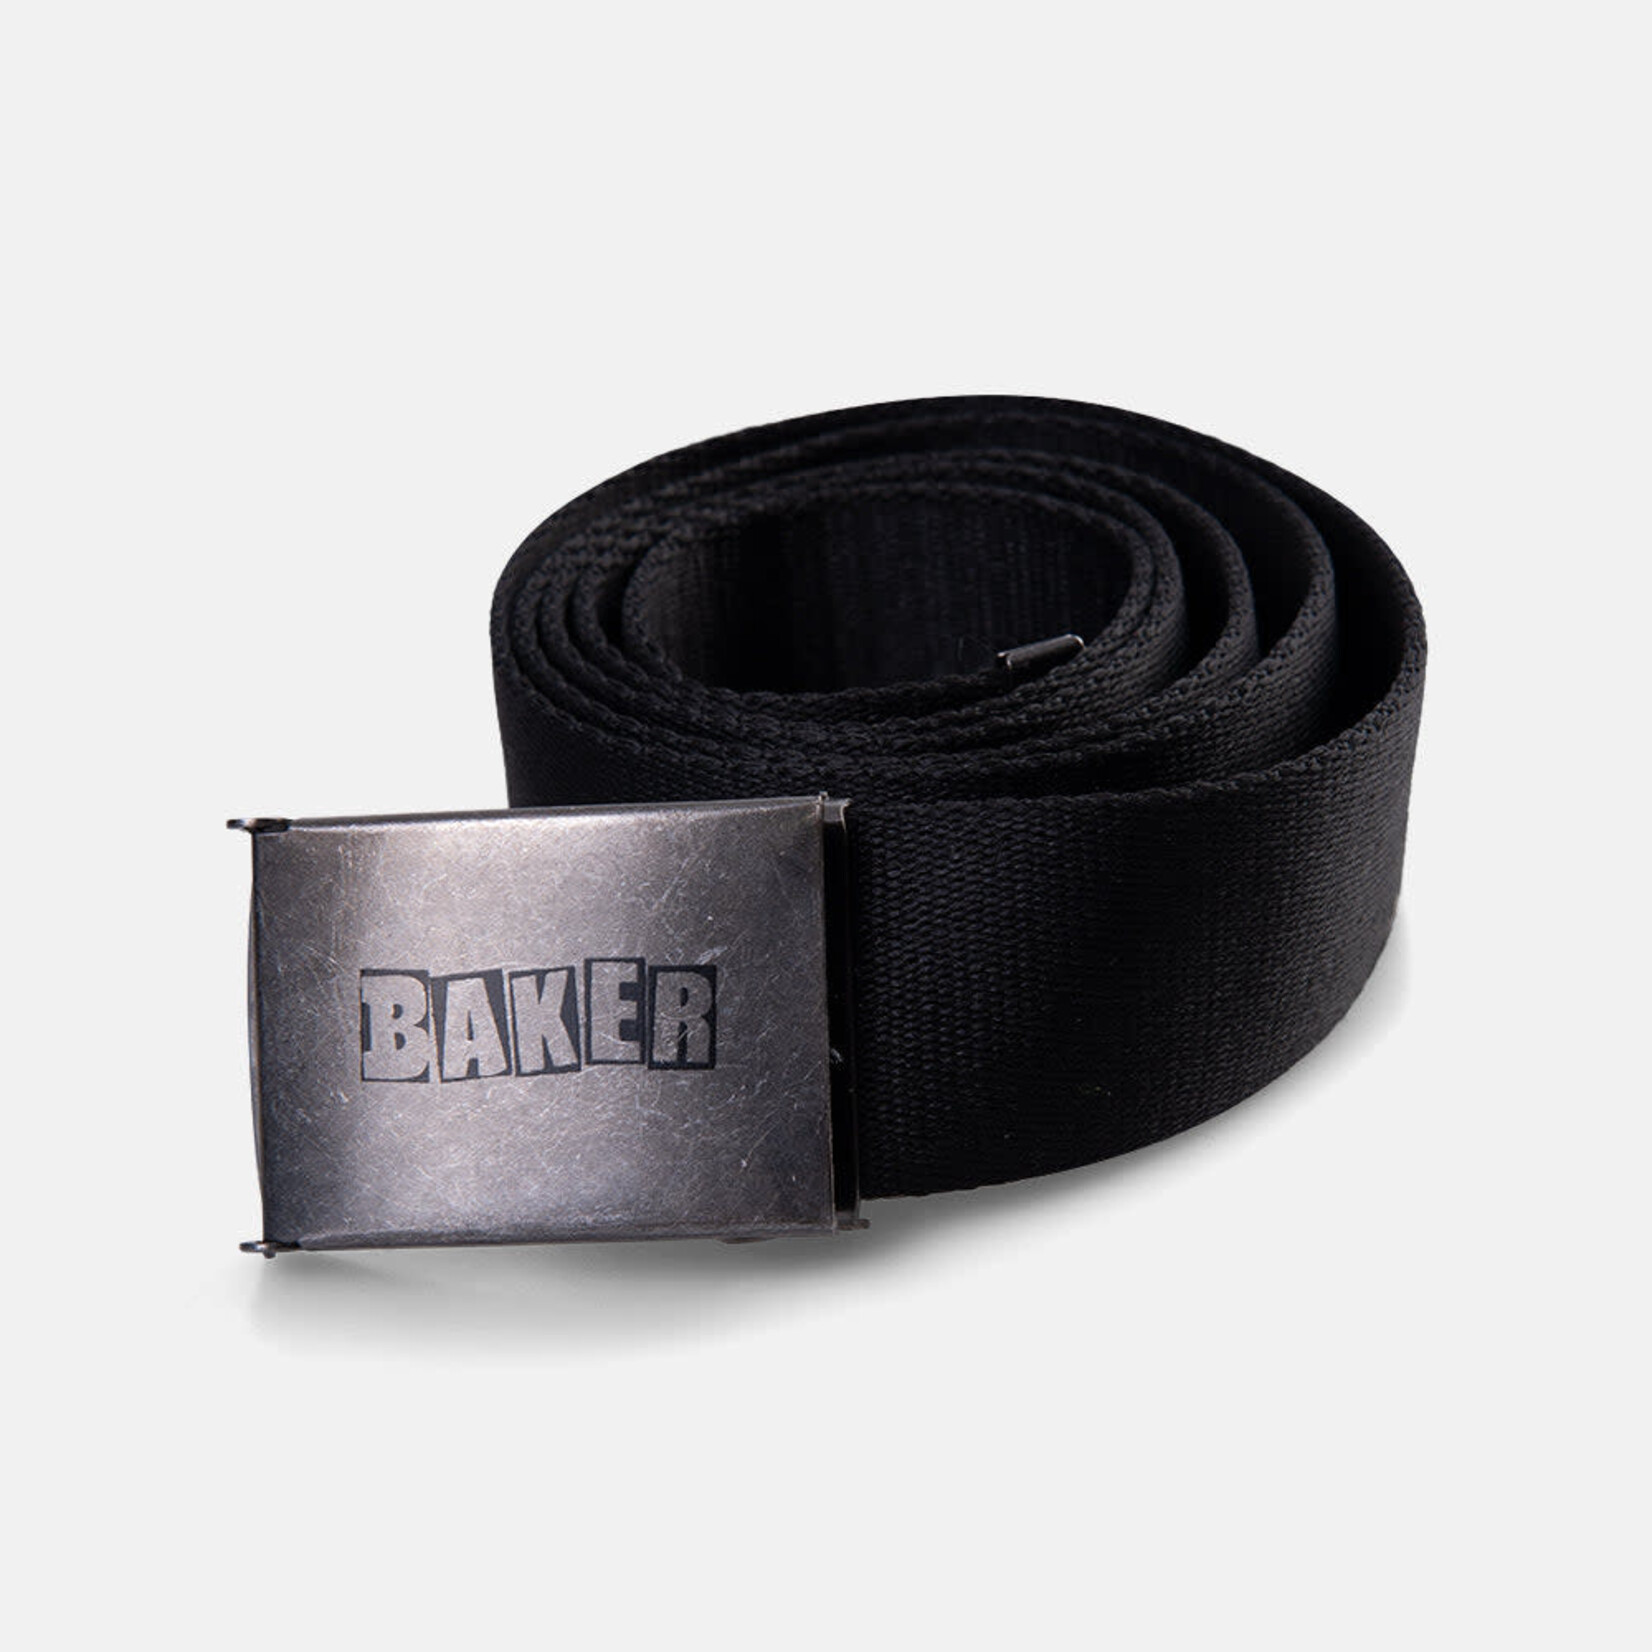 Baker Baker Brand Logo Black Web Belt